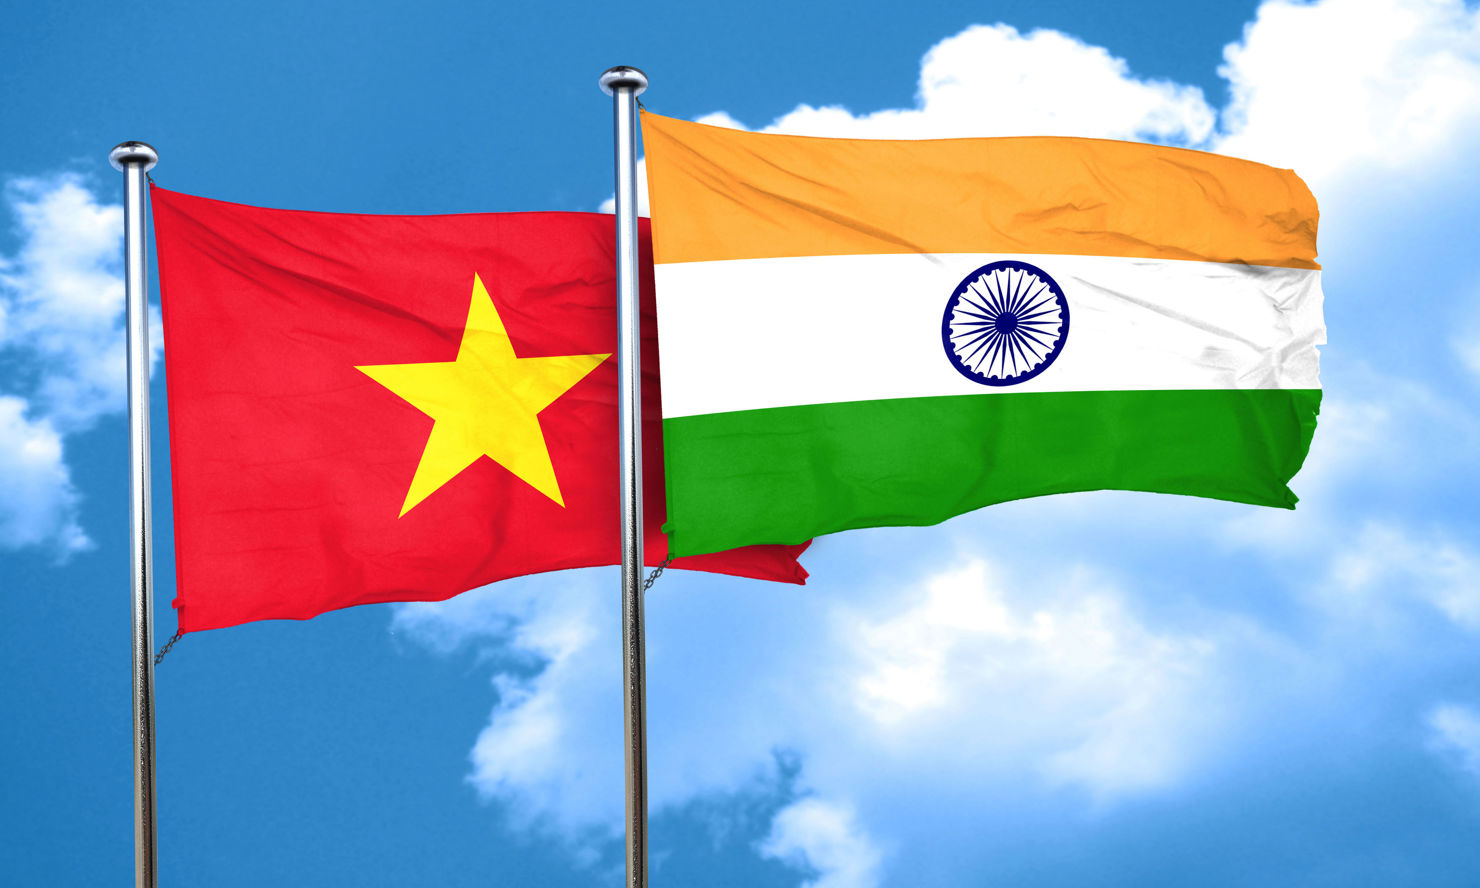 Ấn Độ là một trong số các đối tác thương mại lớn của Việt Nam trên thế giới. Nguồn: internet